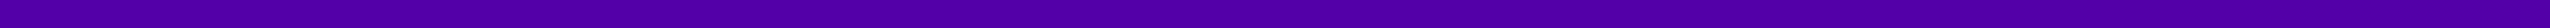 5Things line-purple